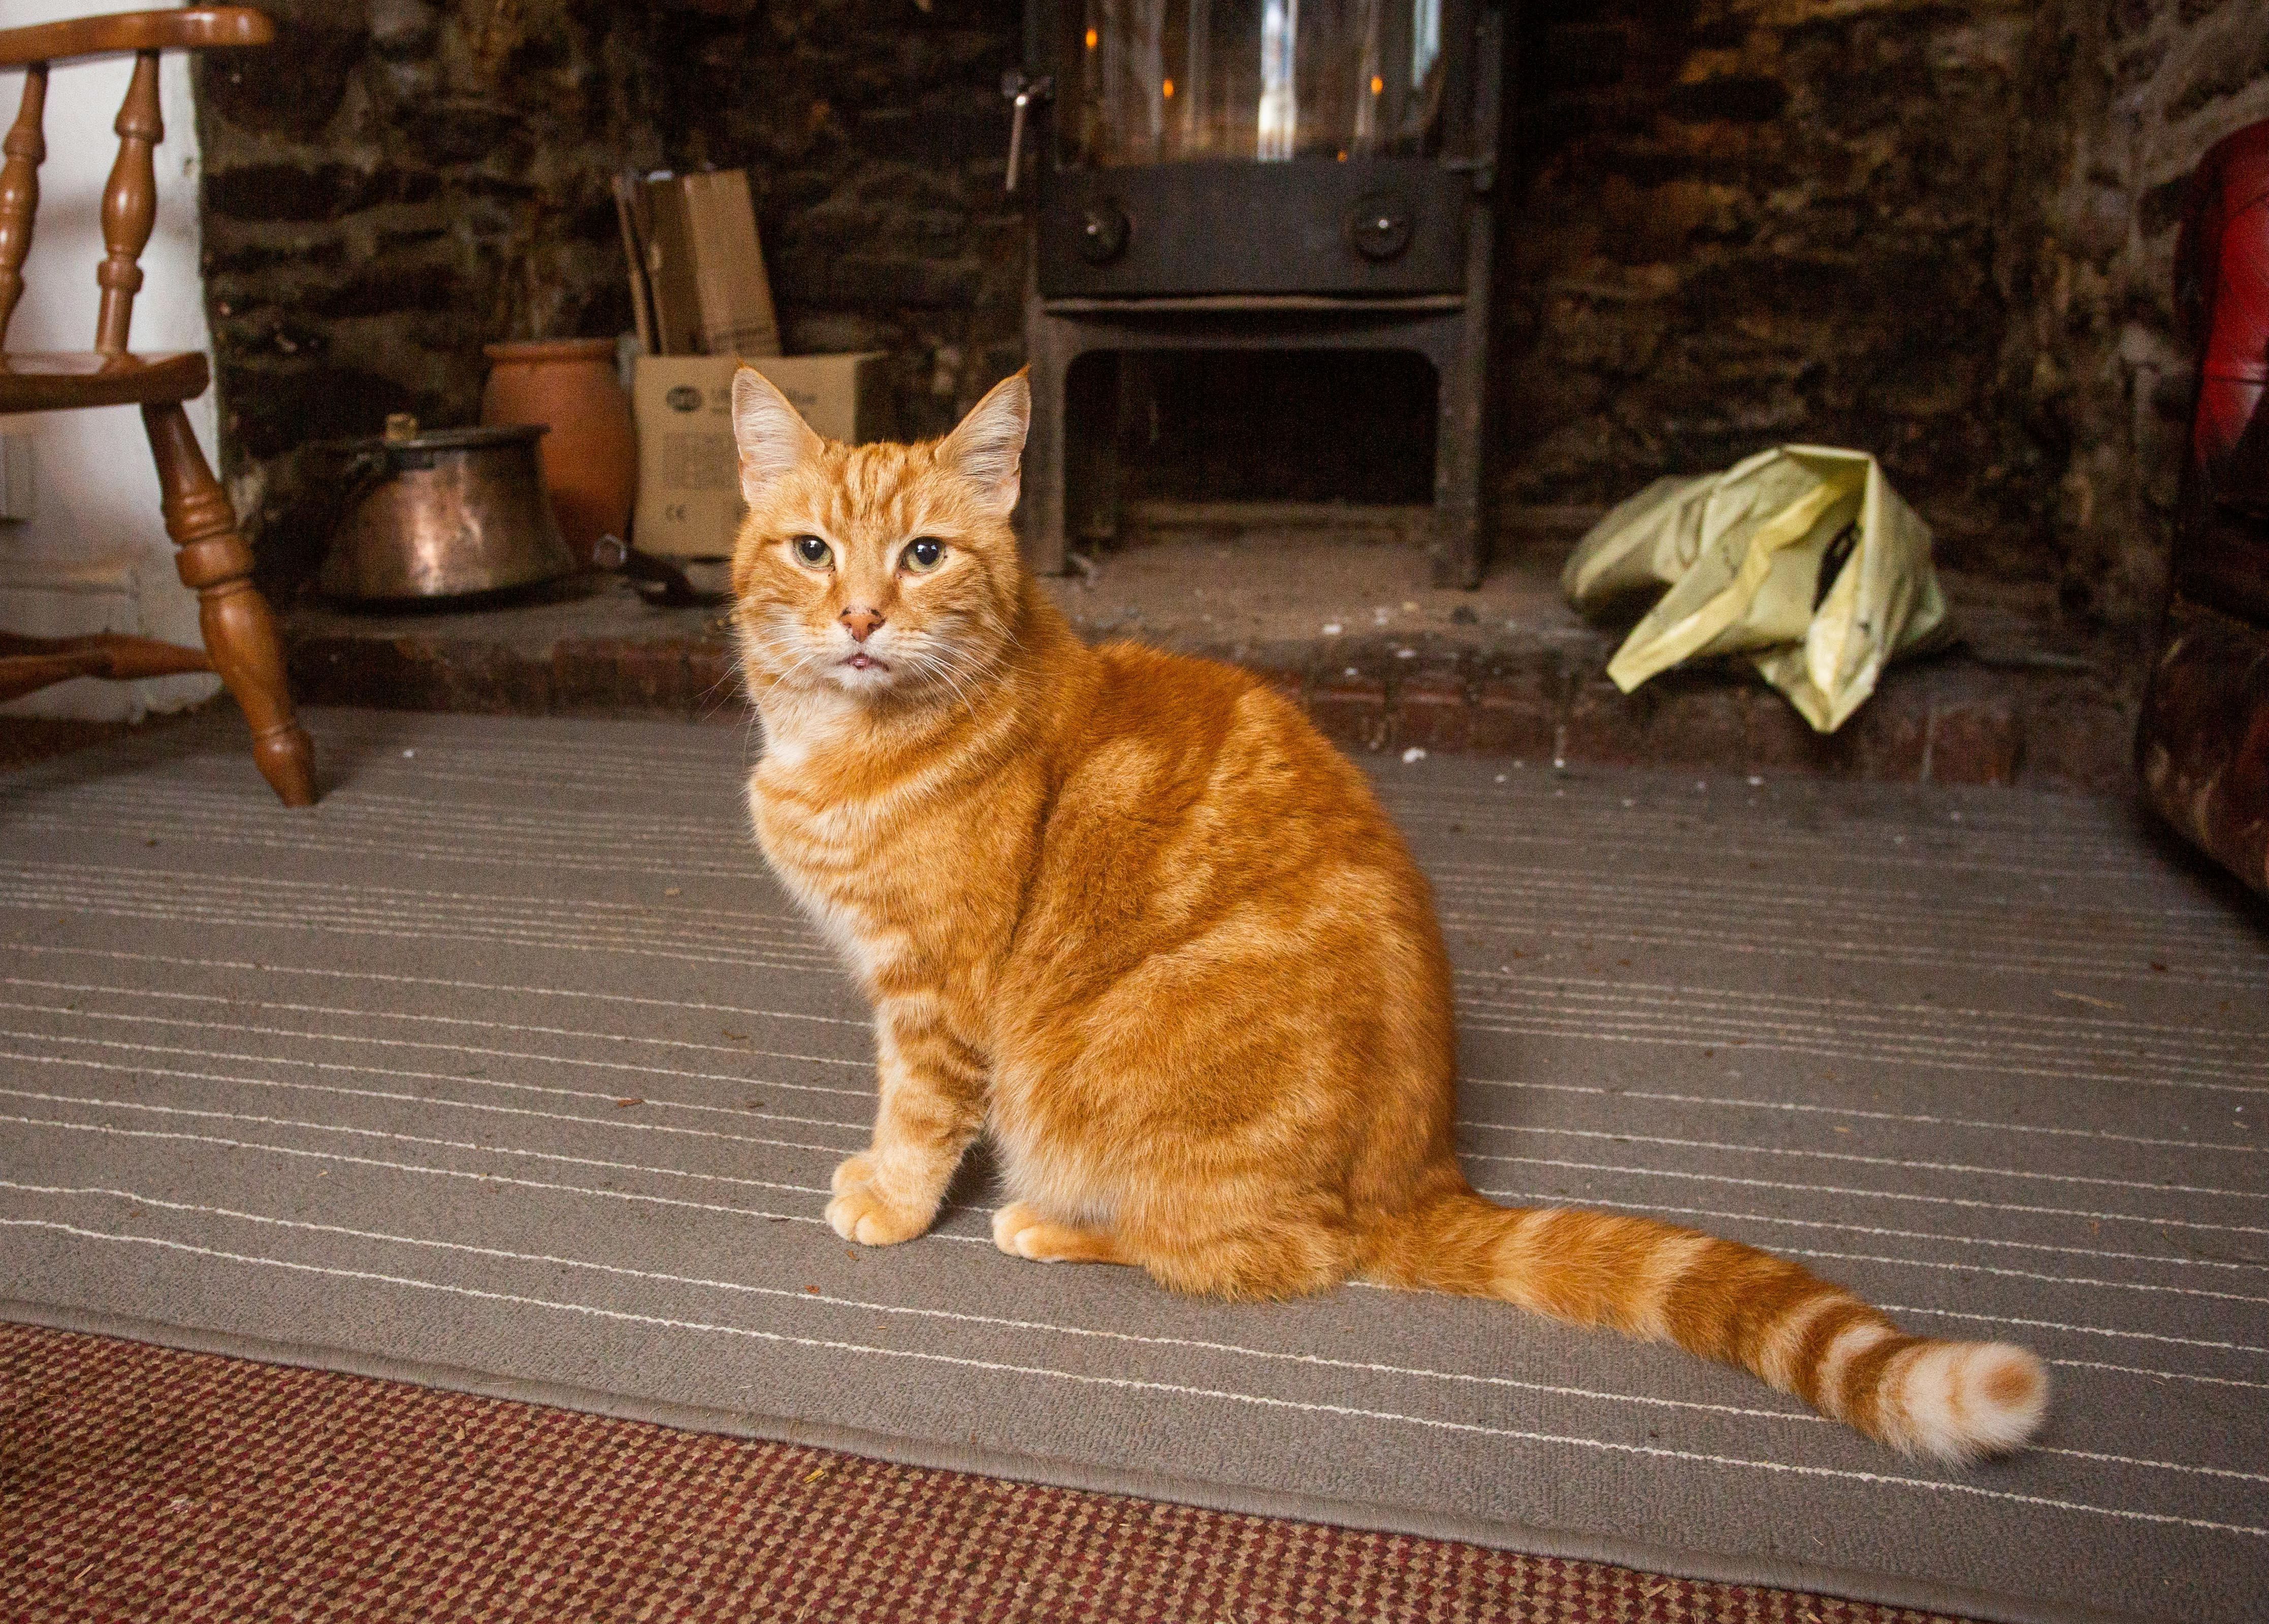 Garfield, a vörös macska 64 kilométert utazott, hogy megkeresse előző  gazdáit - Blikk